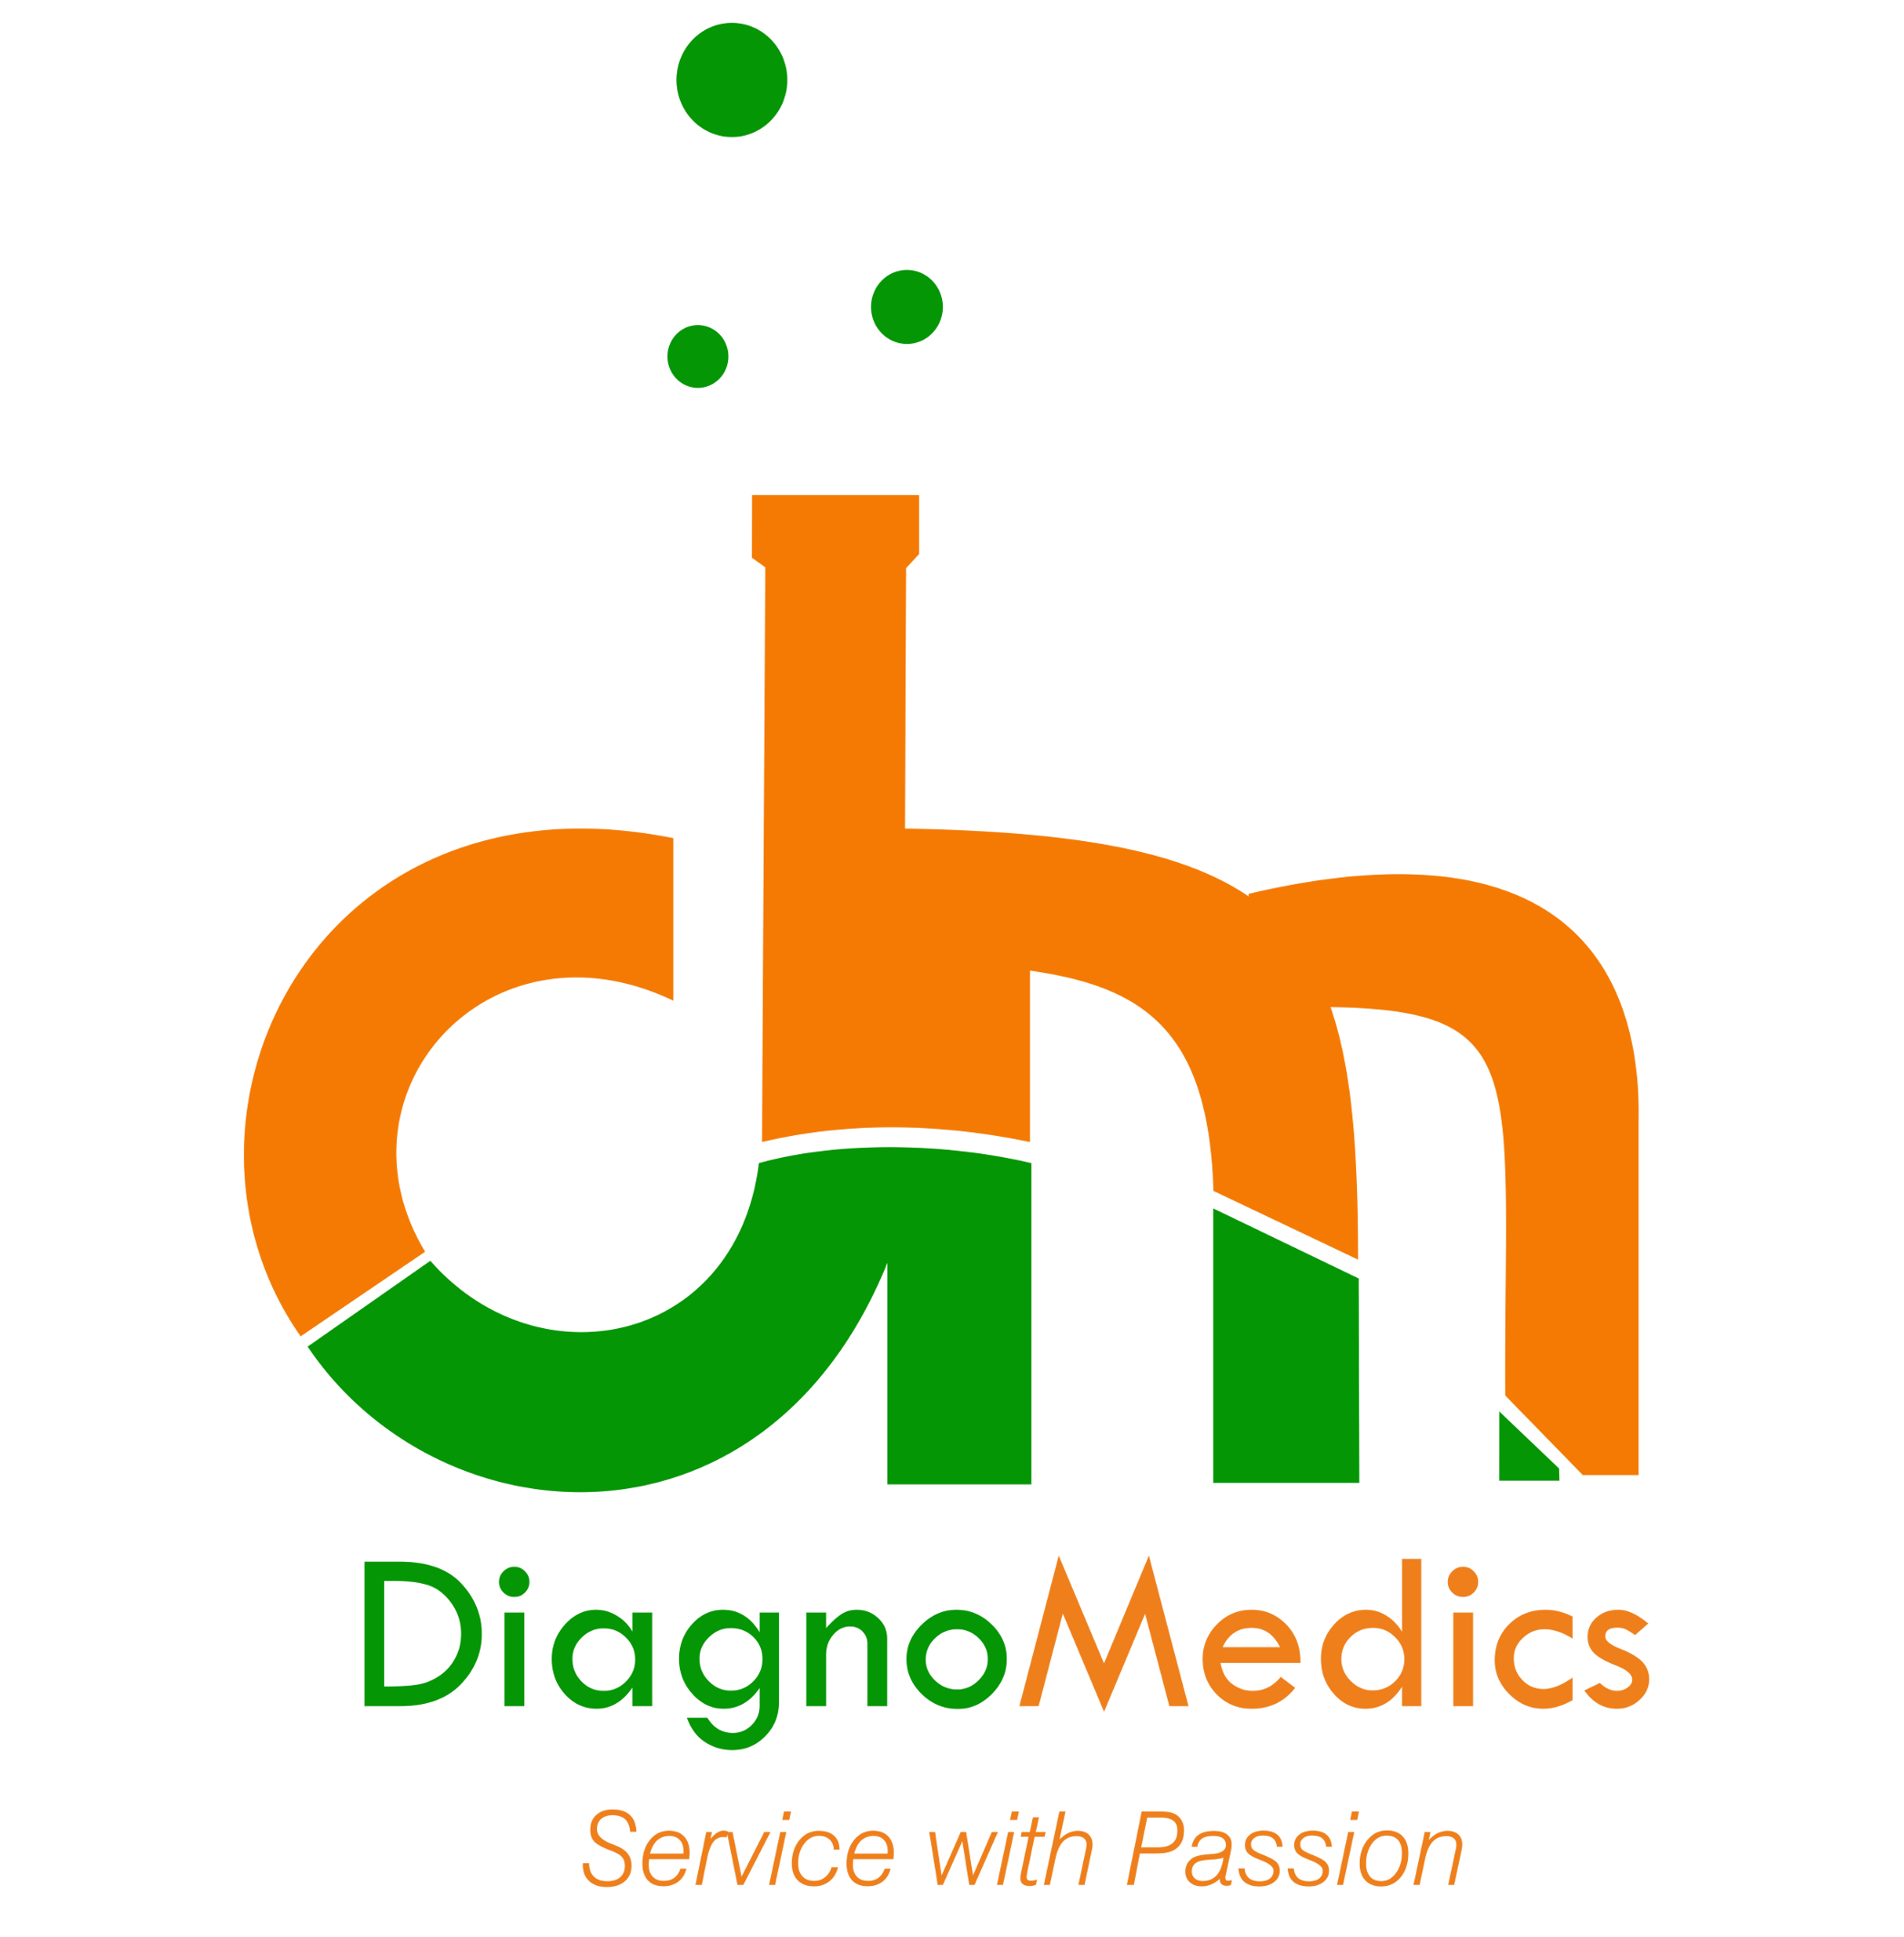 DiagnoMedics Ltd